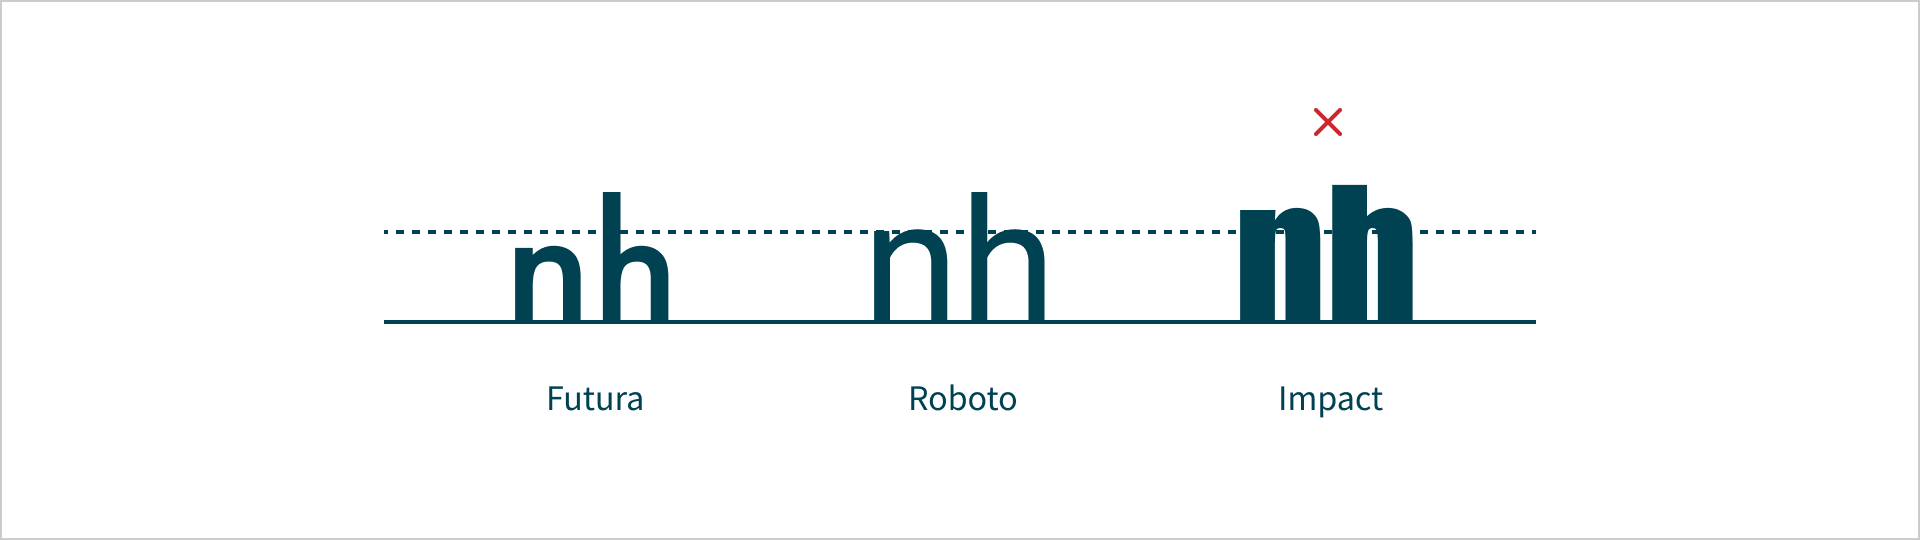 Afgebeeld zijn de letters 'n' en 'h' met lettertype Futura, Roboto en Impact. Futura heeft een lage x-hoogte, Roboto gemiddeld tot hoog, Impact zeer hoog. Bij het Impact voorbeeld staat een rood kruis.